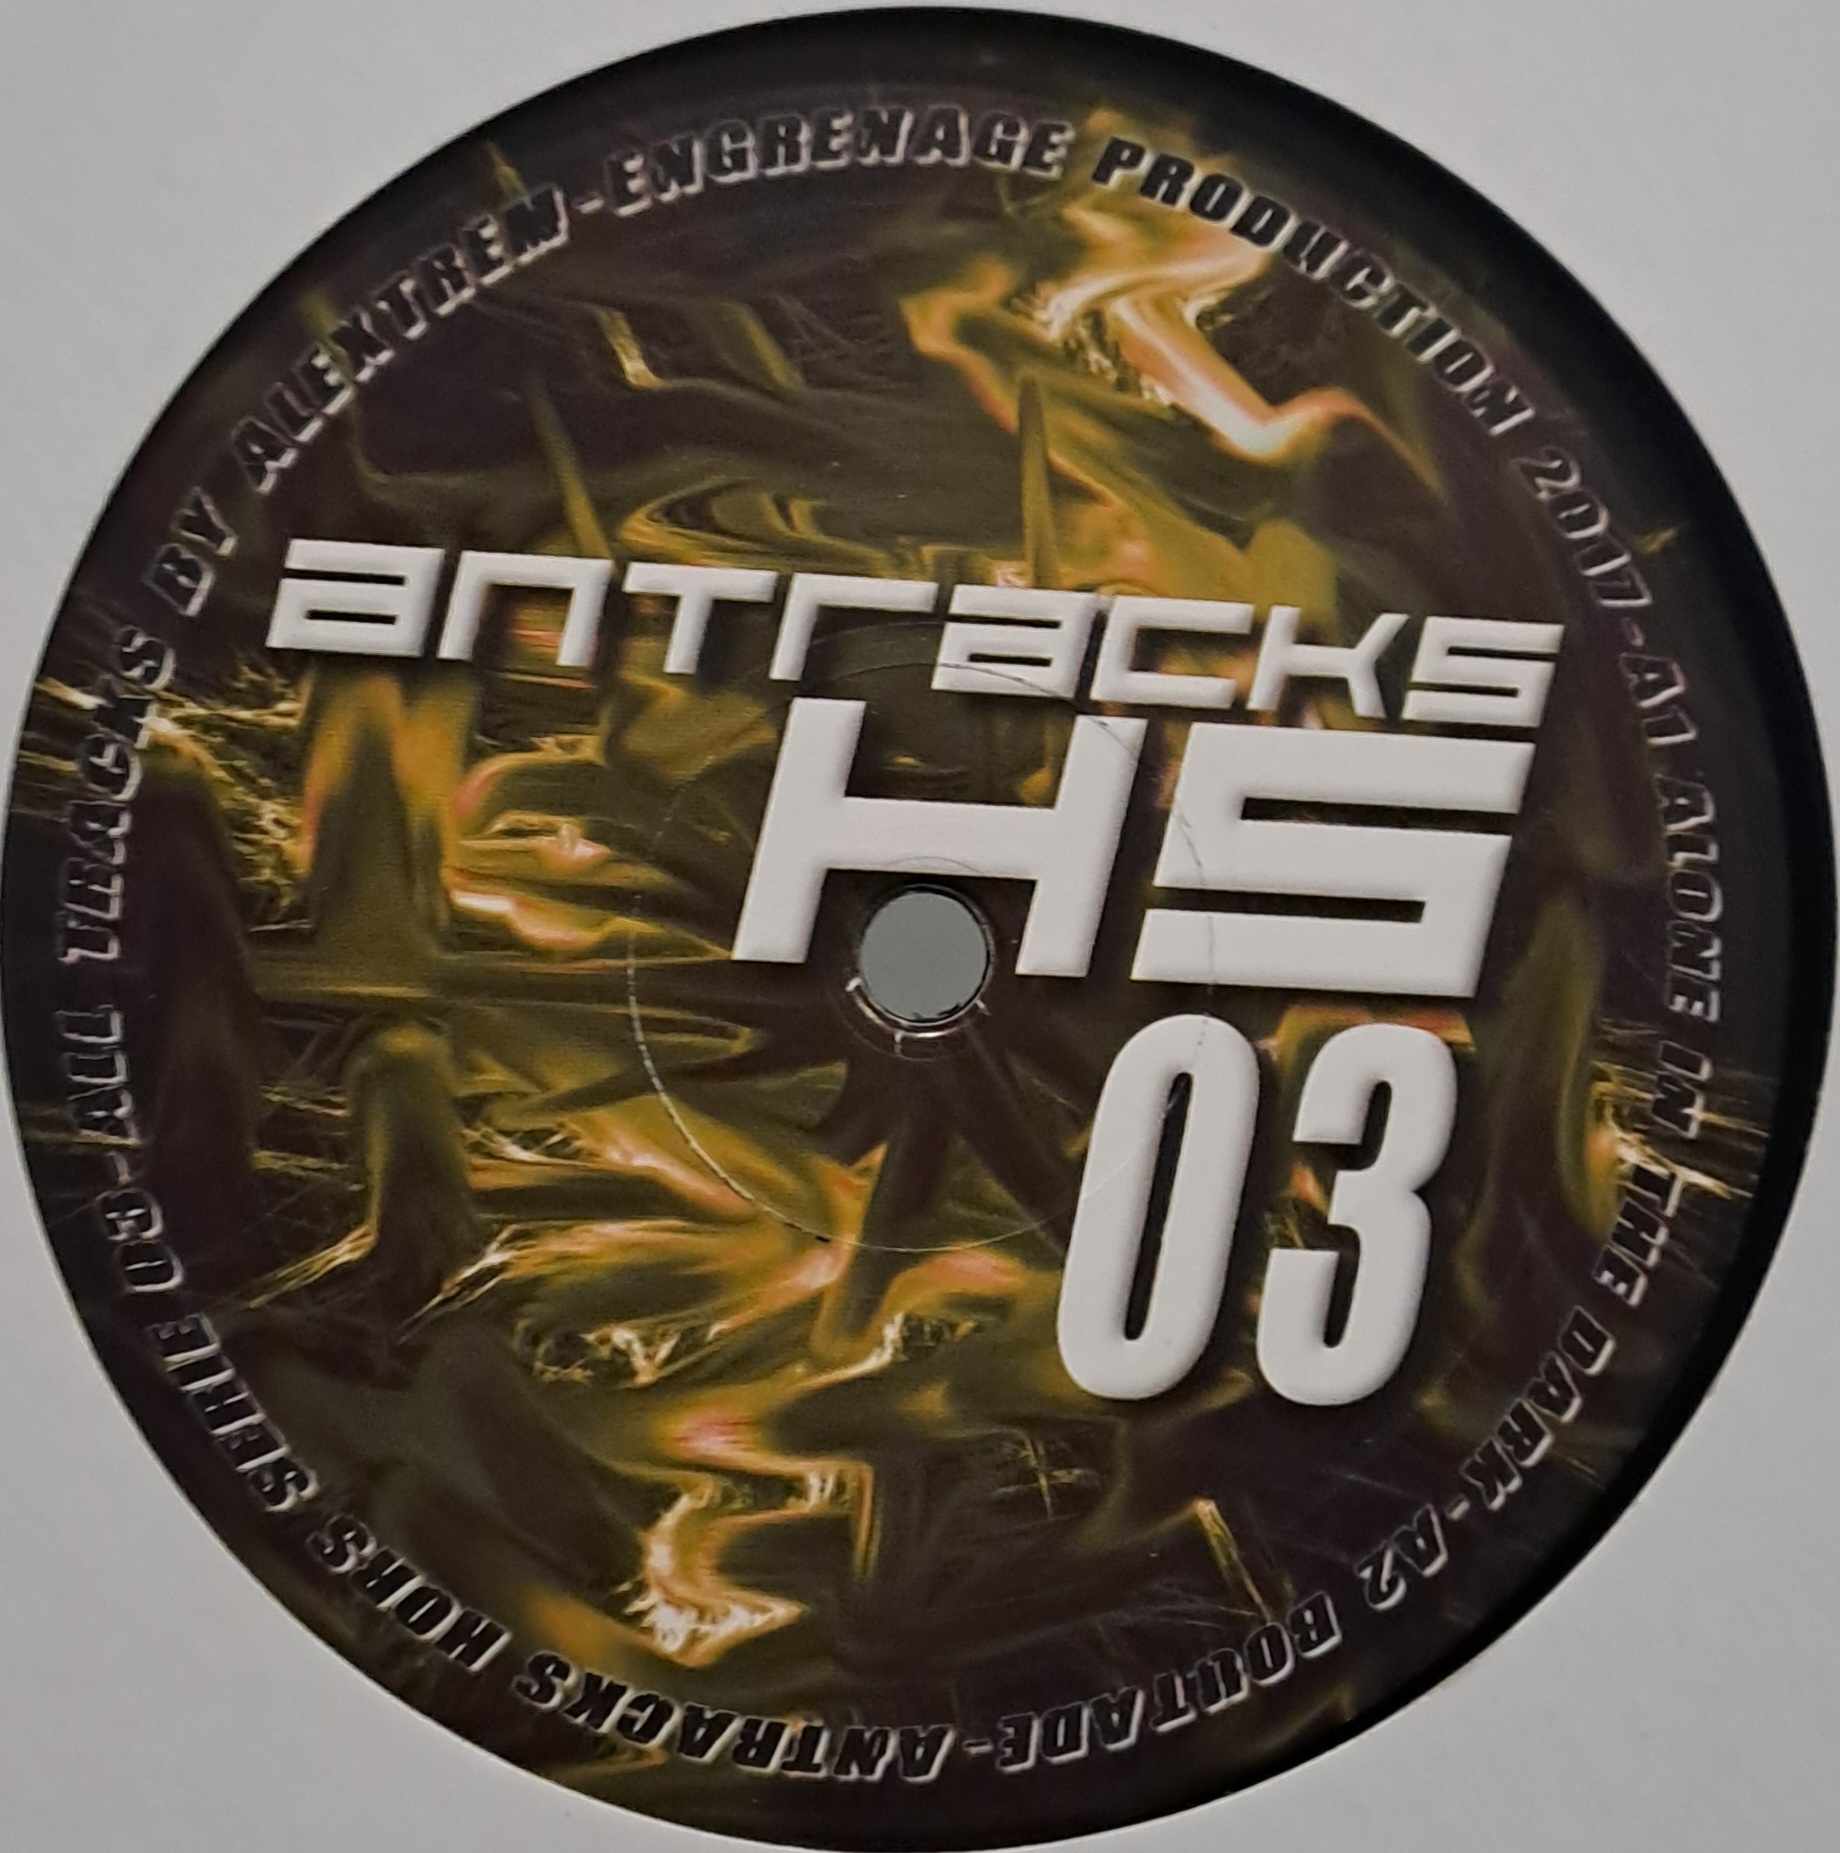 Antracks HS 03 - vinyle freetekno